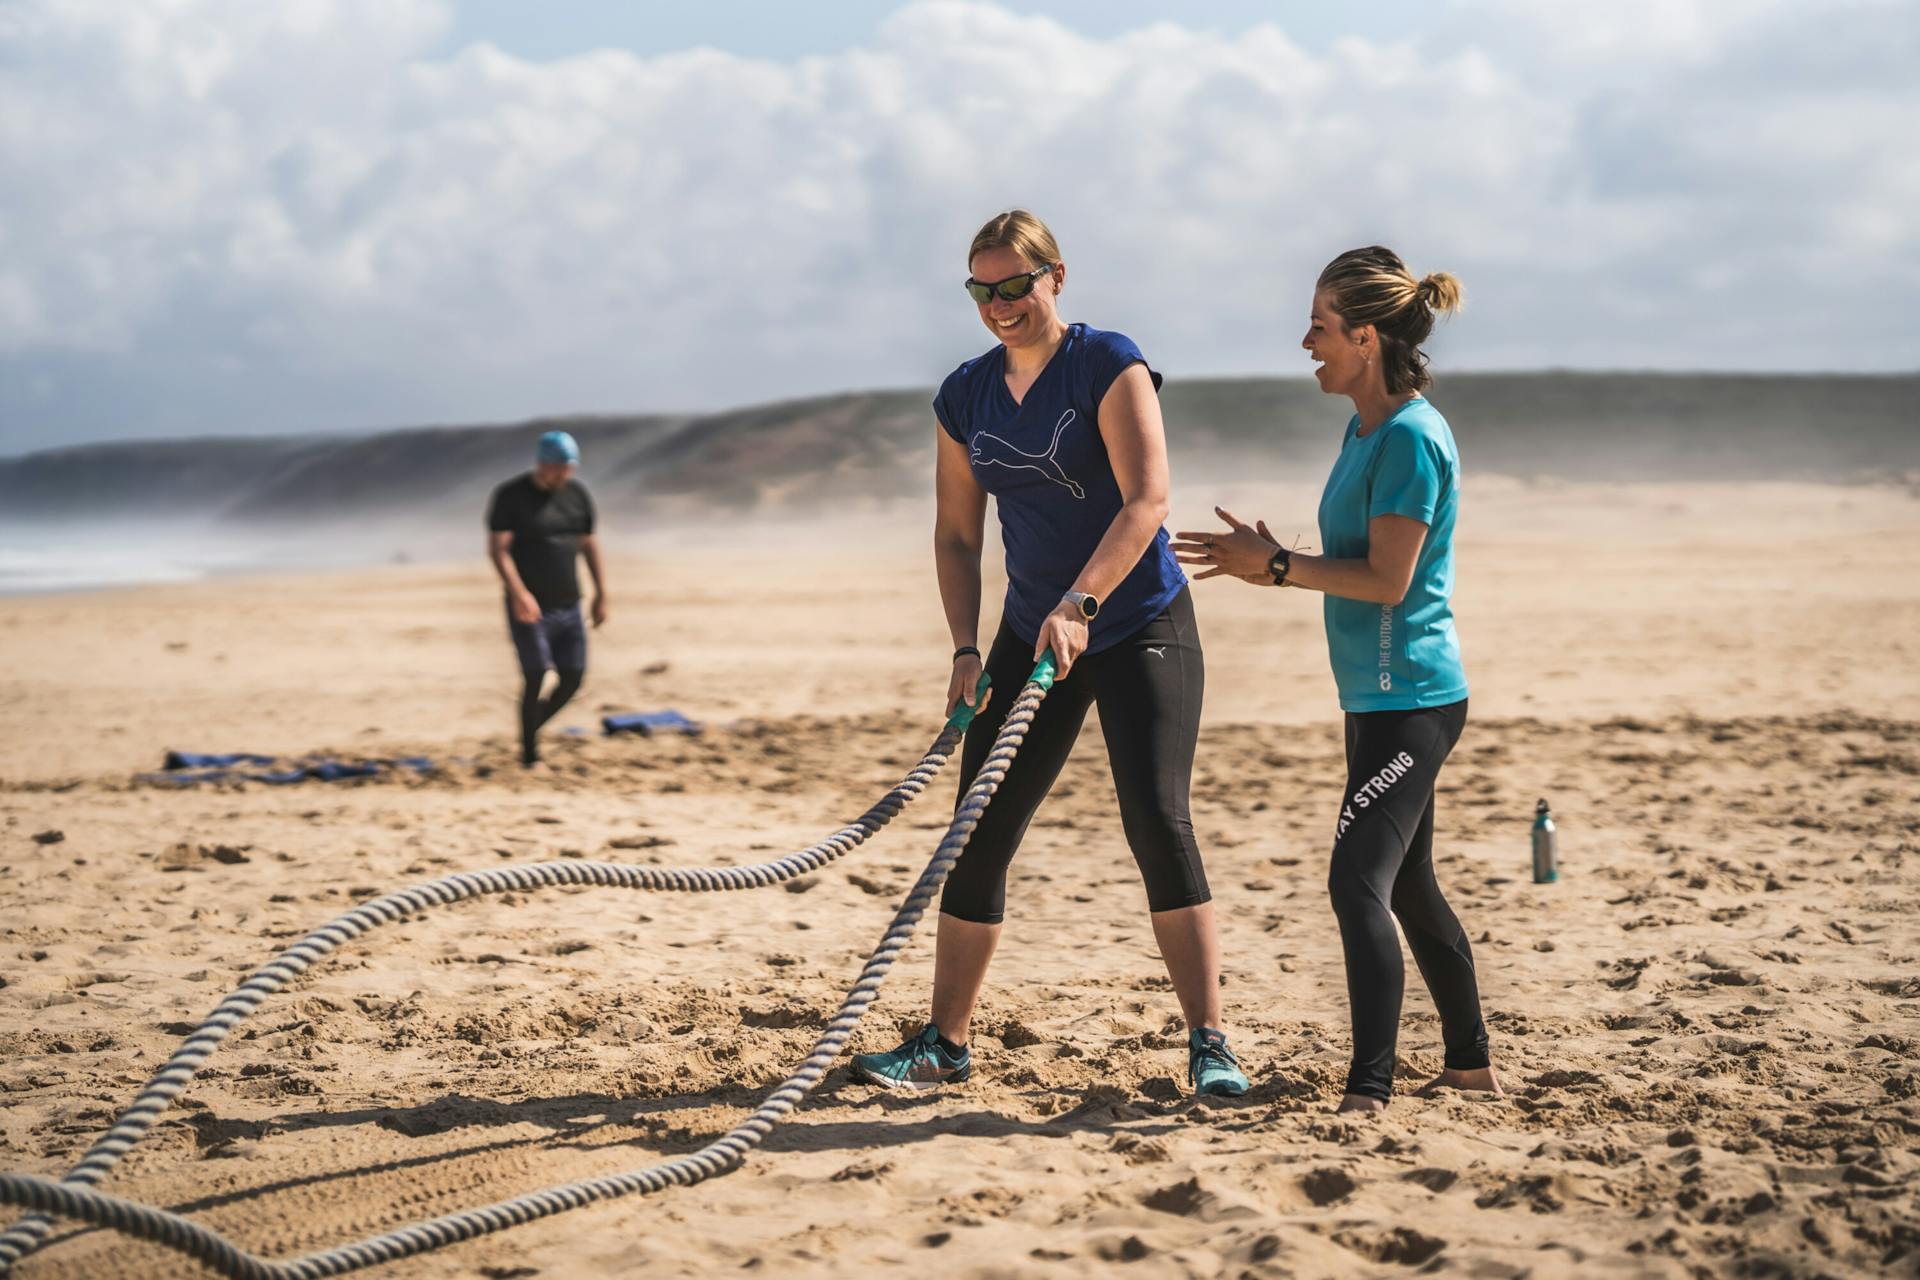 Personal Trainer betreut Reiseteilnehmerin am Strand mit Ropes